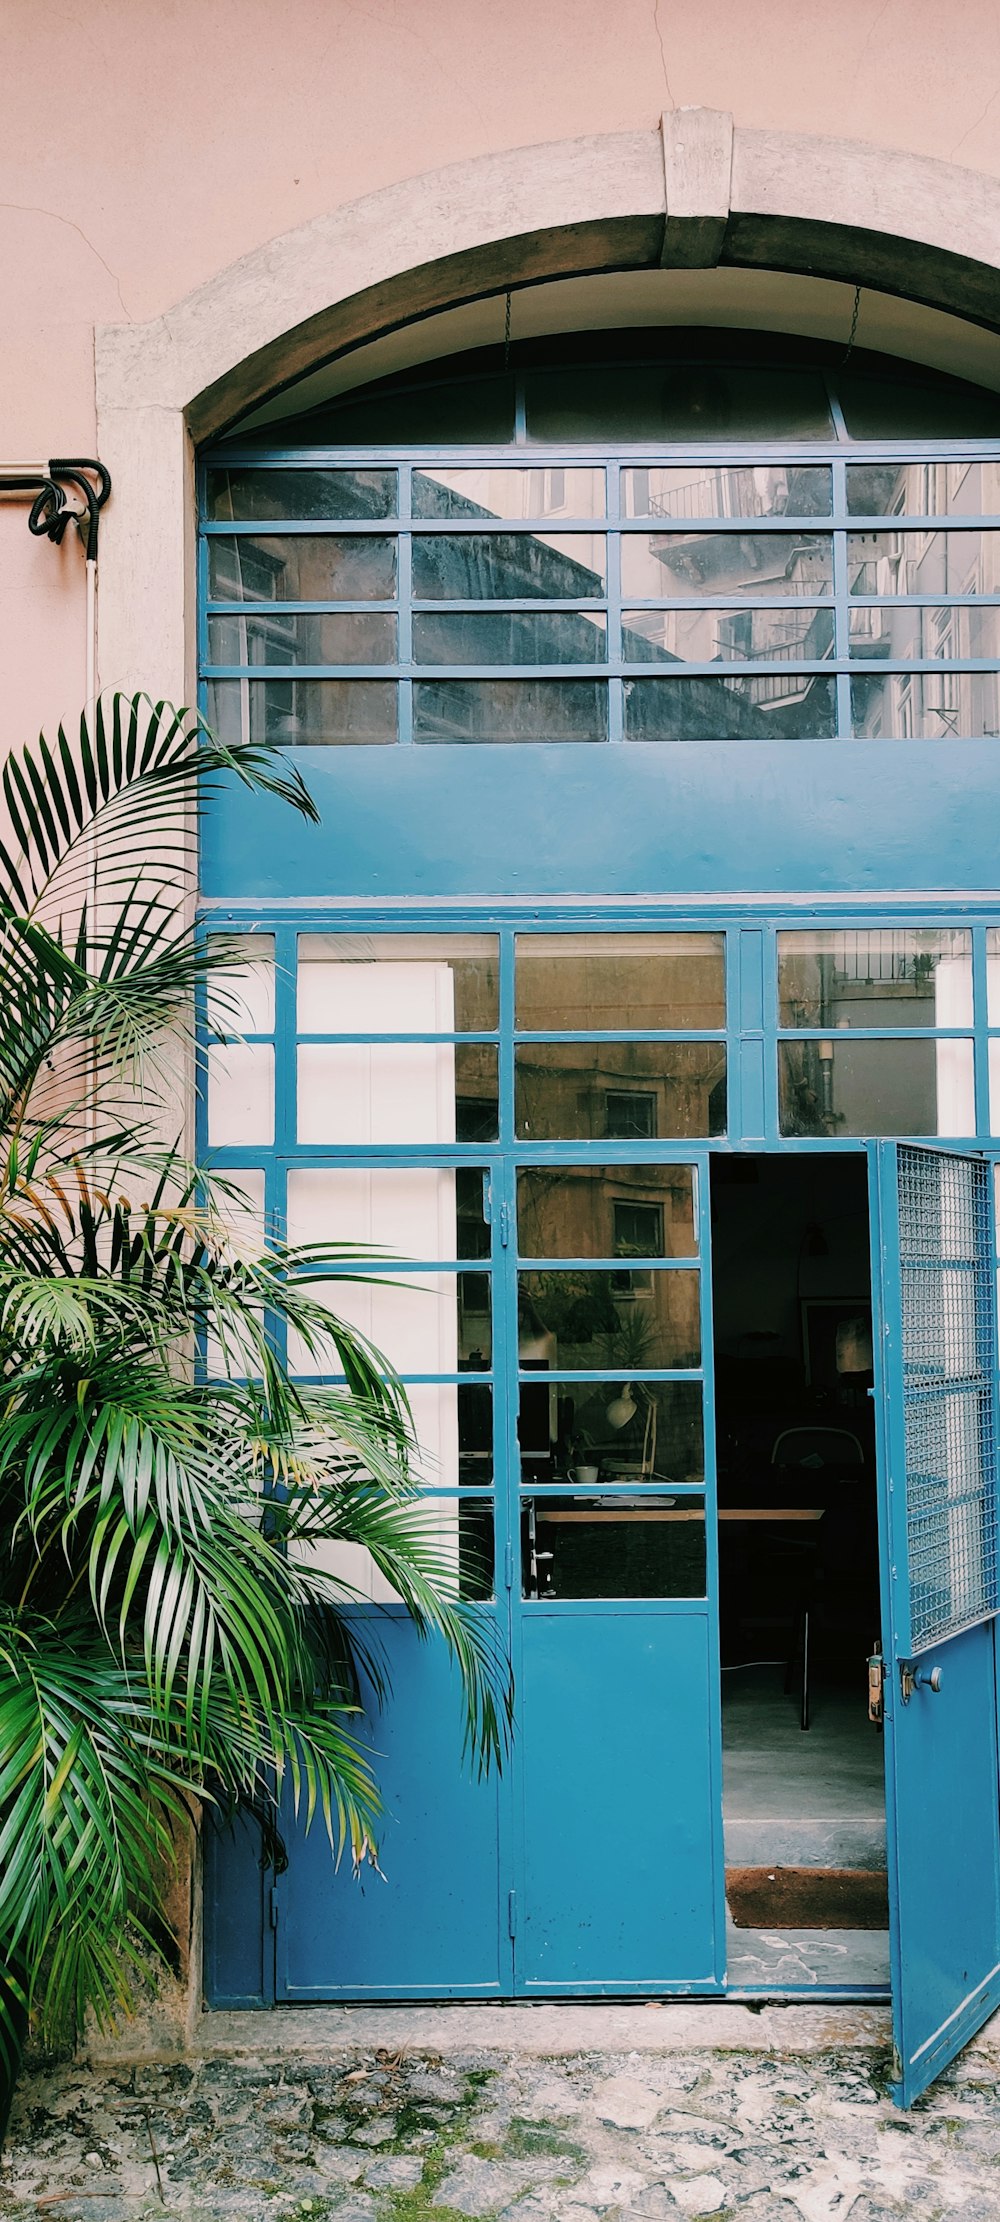 Grüne Palmenpflanze in der Nähe von blauem Glasfenster mit Holzrahmen